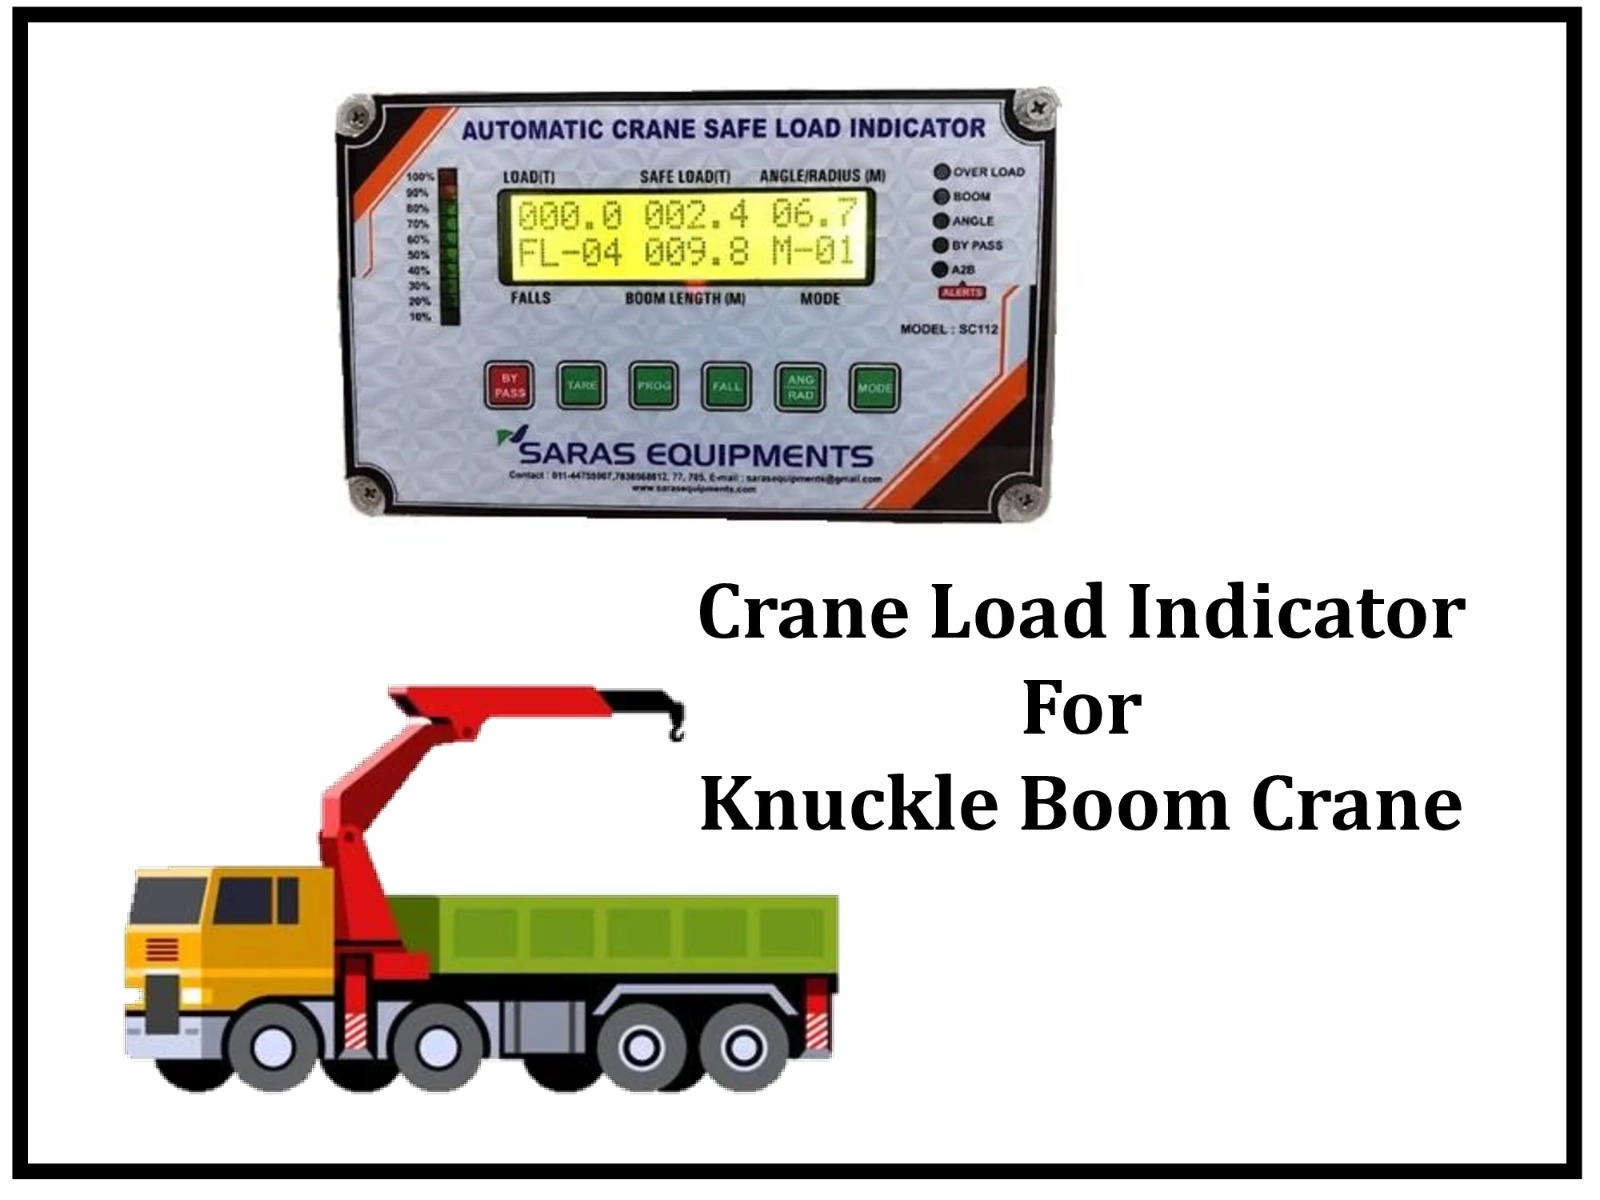 Crane Safe Load Indicator for Knuckle Boom Crane